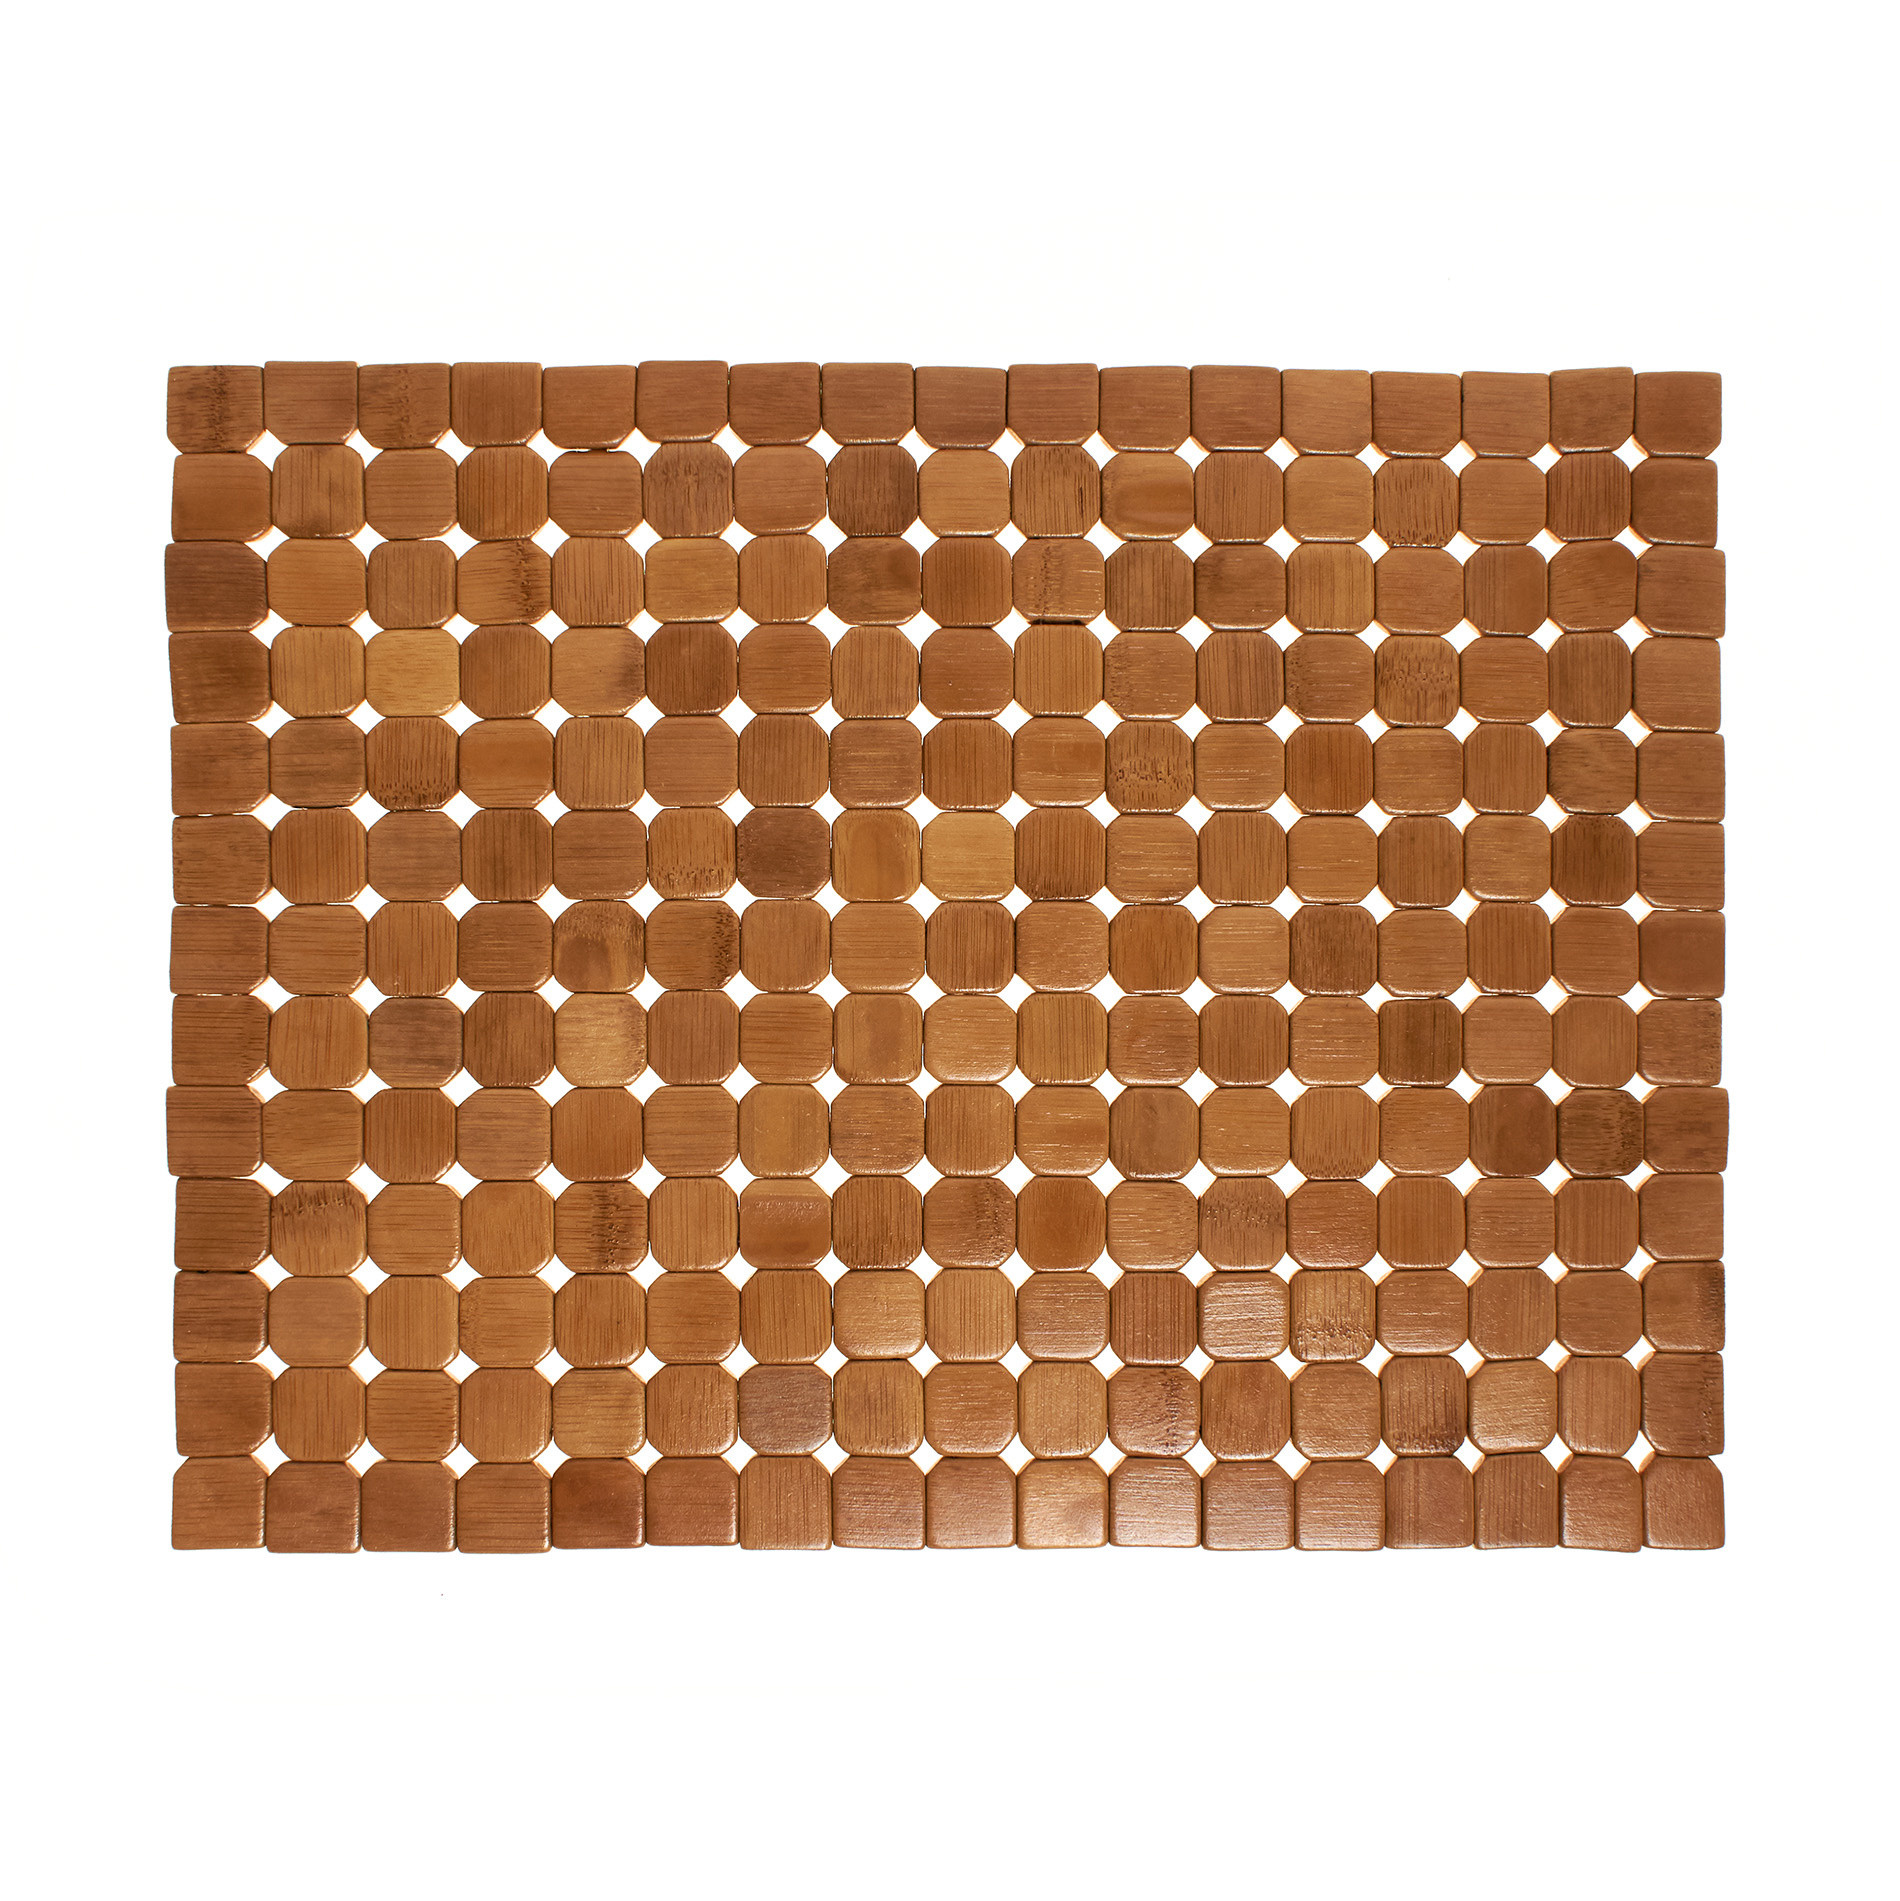 Расписной бамбуковый коврик для столовых приборов Coincasa, светло-коричневый расписной бамбуковый коврик для столовых приборов coincasa темно коричневый